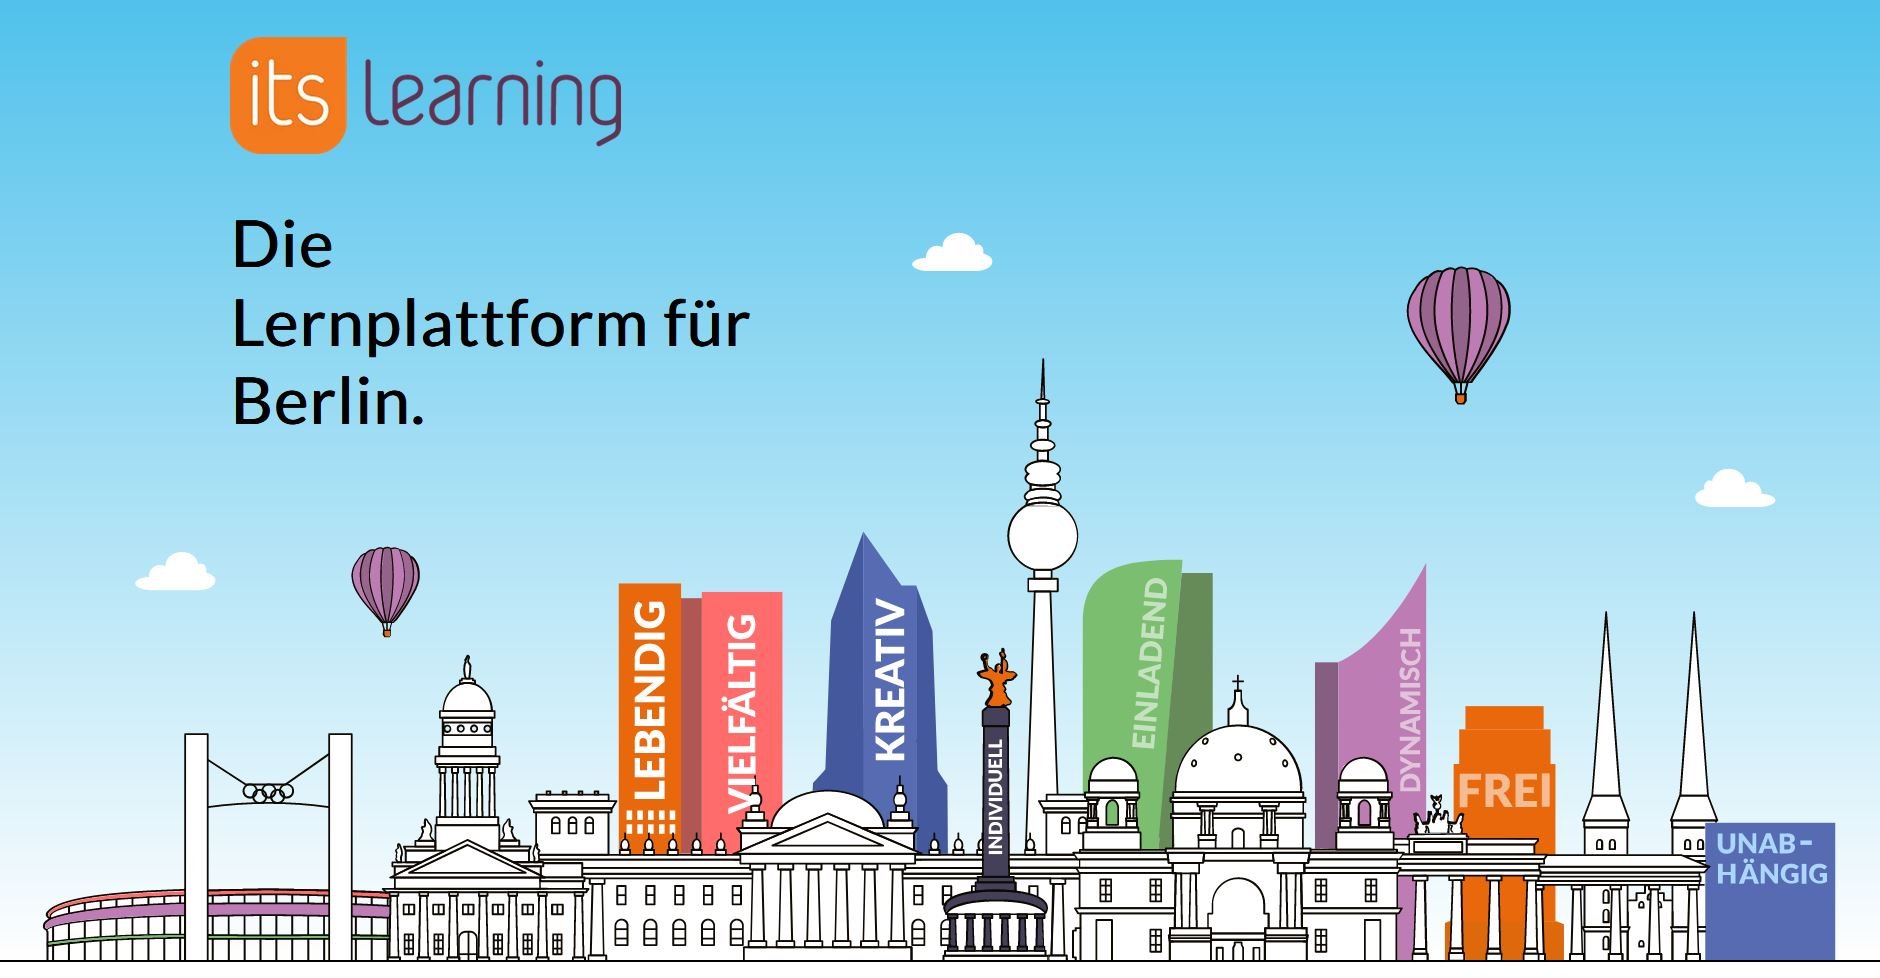 itslearning - Die Lernplattform für Berlin